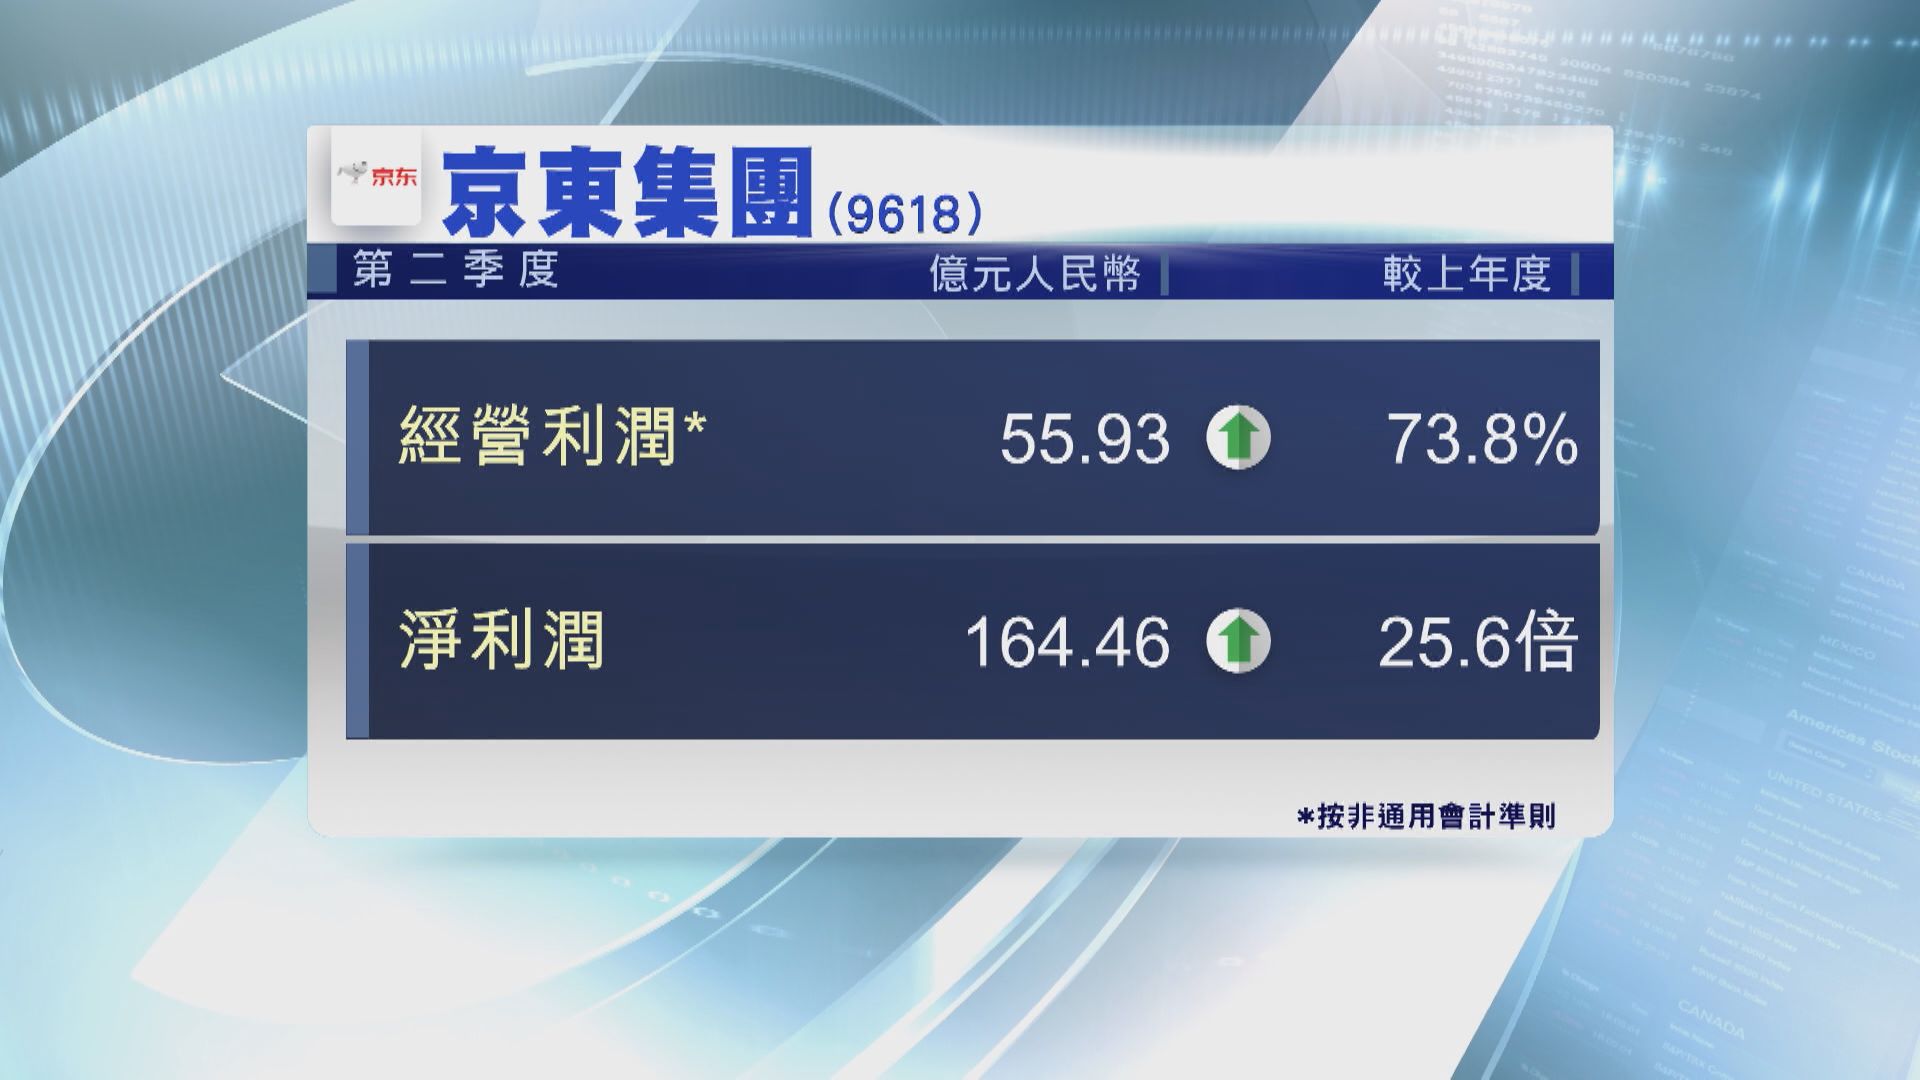 京東次季經營利潤升74% 股價抽升